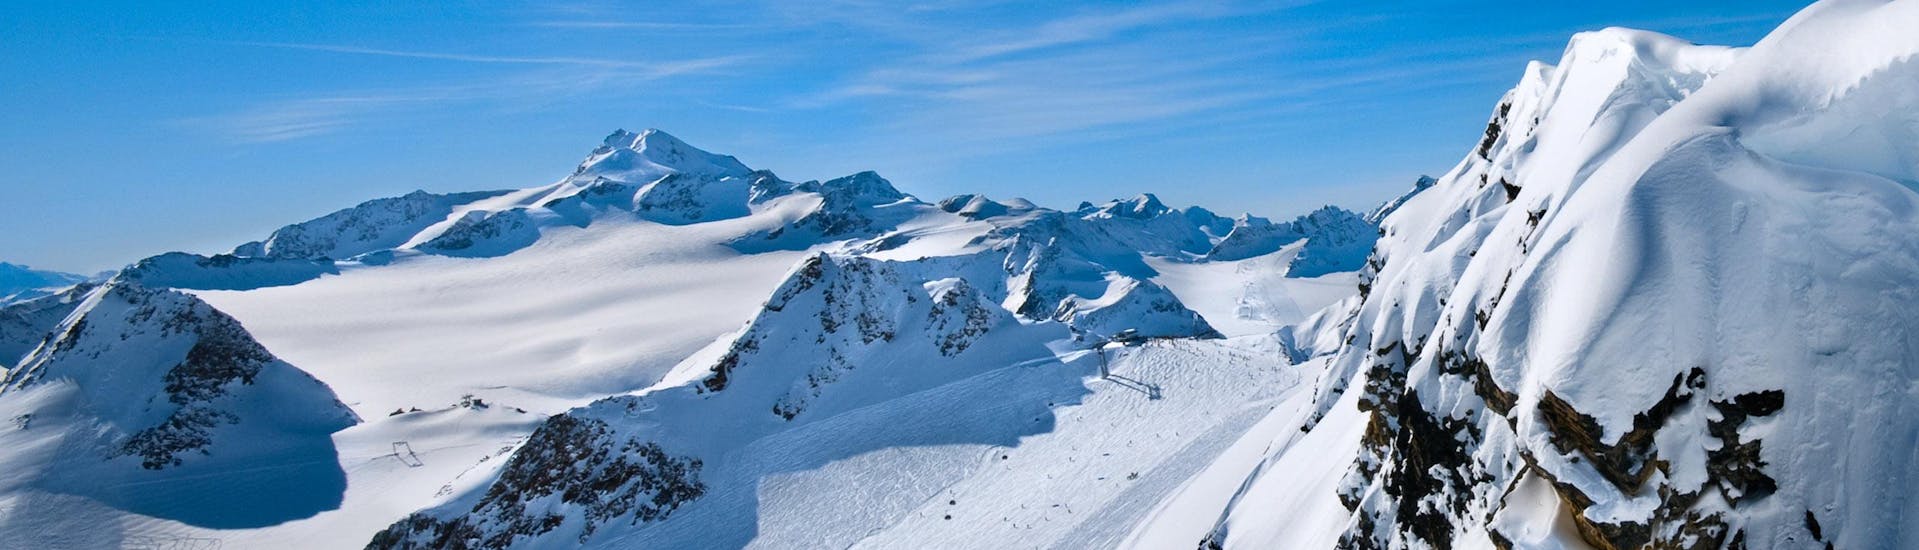 Ausblick auf die sonnige Berglandschaft beim Skifahren lernen mit einer Skischule im Skigebiet Ski Amadé Salzburger Sportwelt.